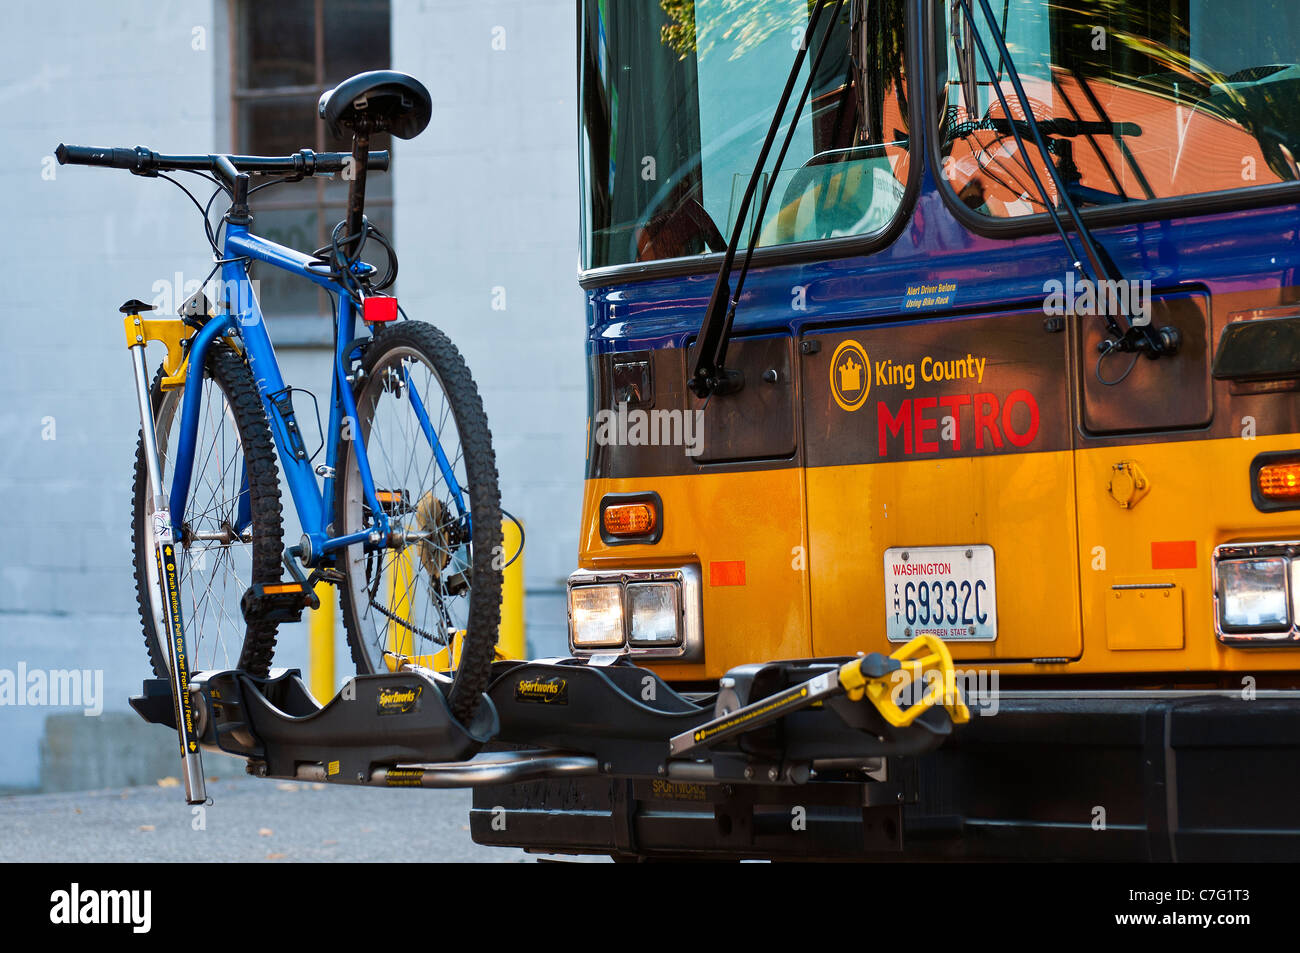 Porte vélo en face de bus public, Seattle, Washington, USA Banque D'Images